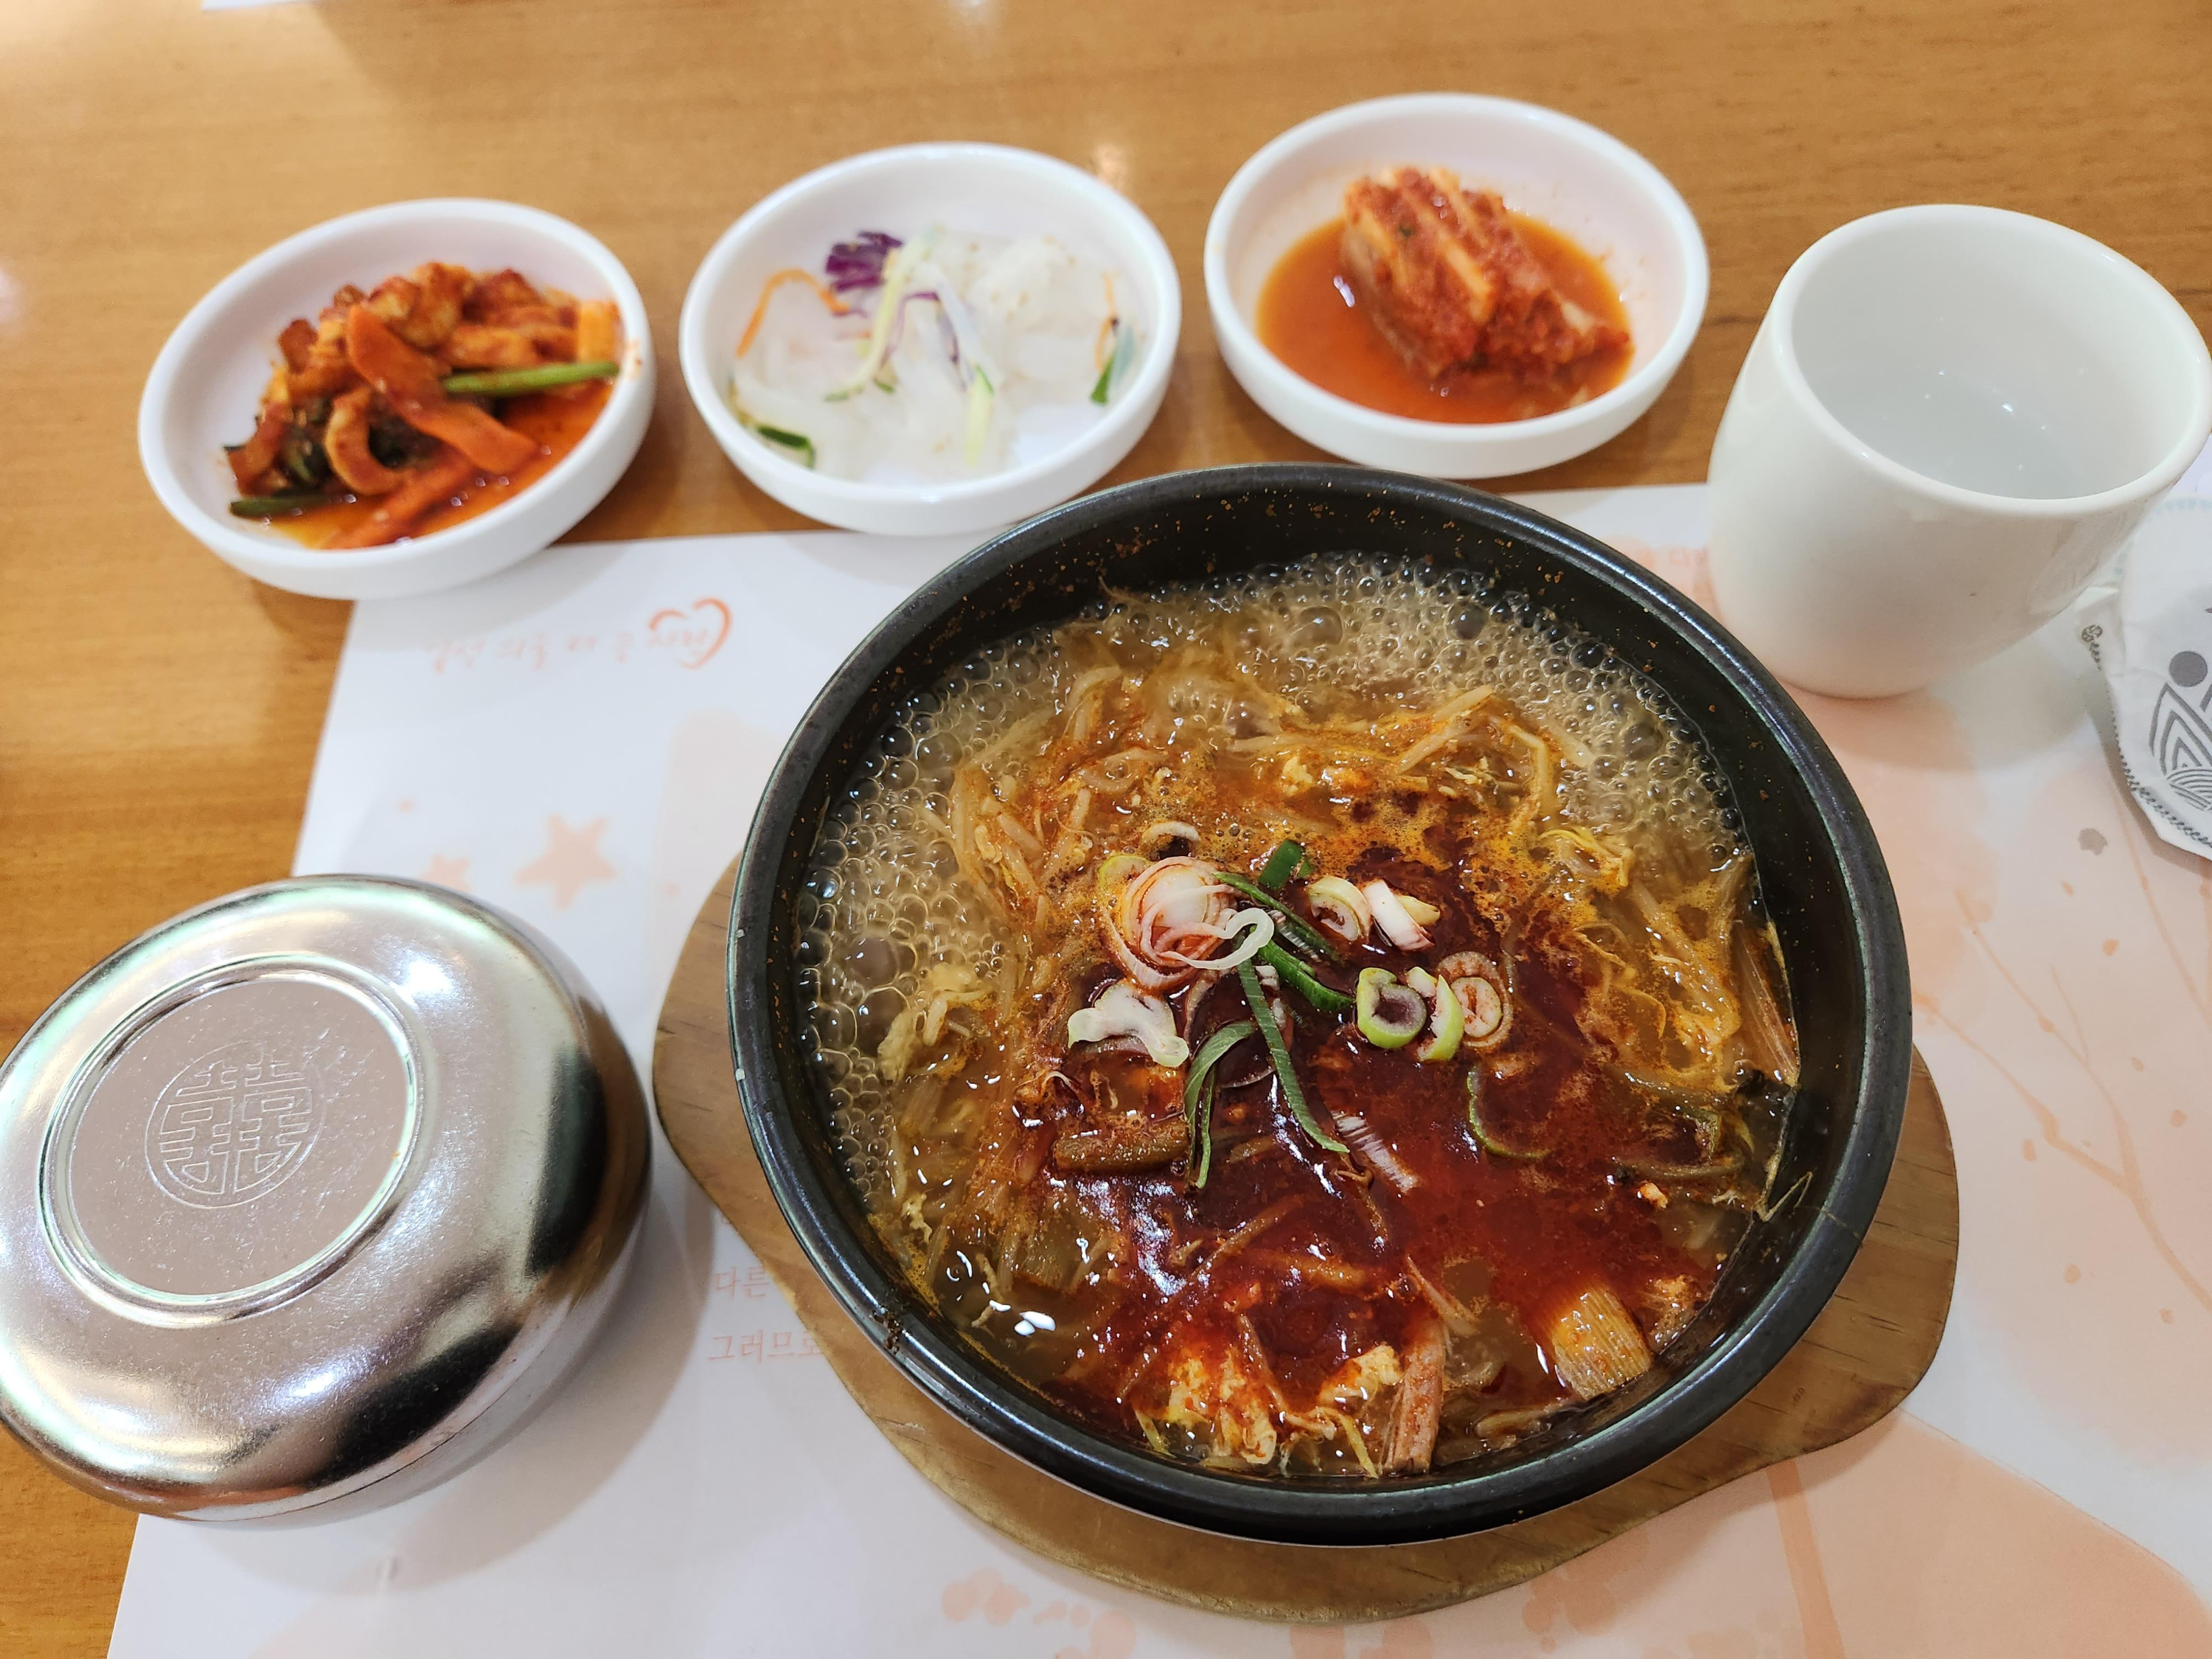  서울 아산병원 식당 가람(한식당)